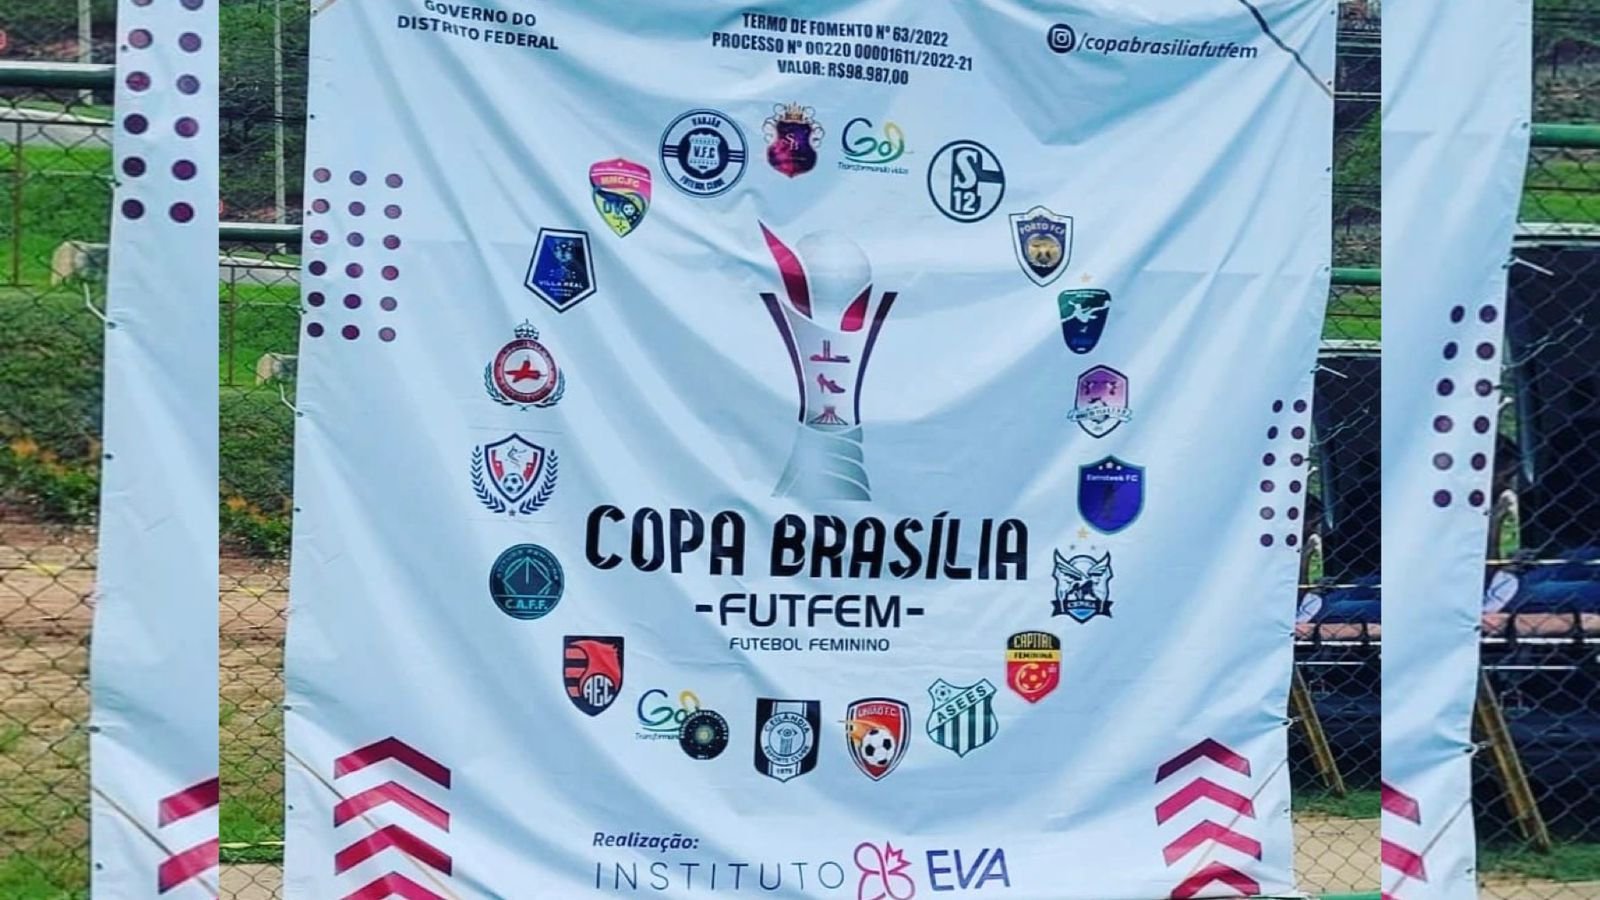 Copa Brasília FutFem reúne 600 atletas na sua terceira edição